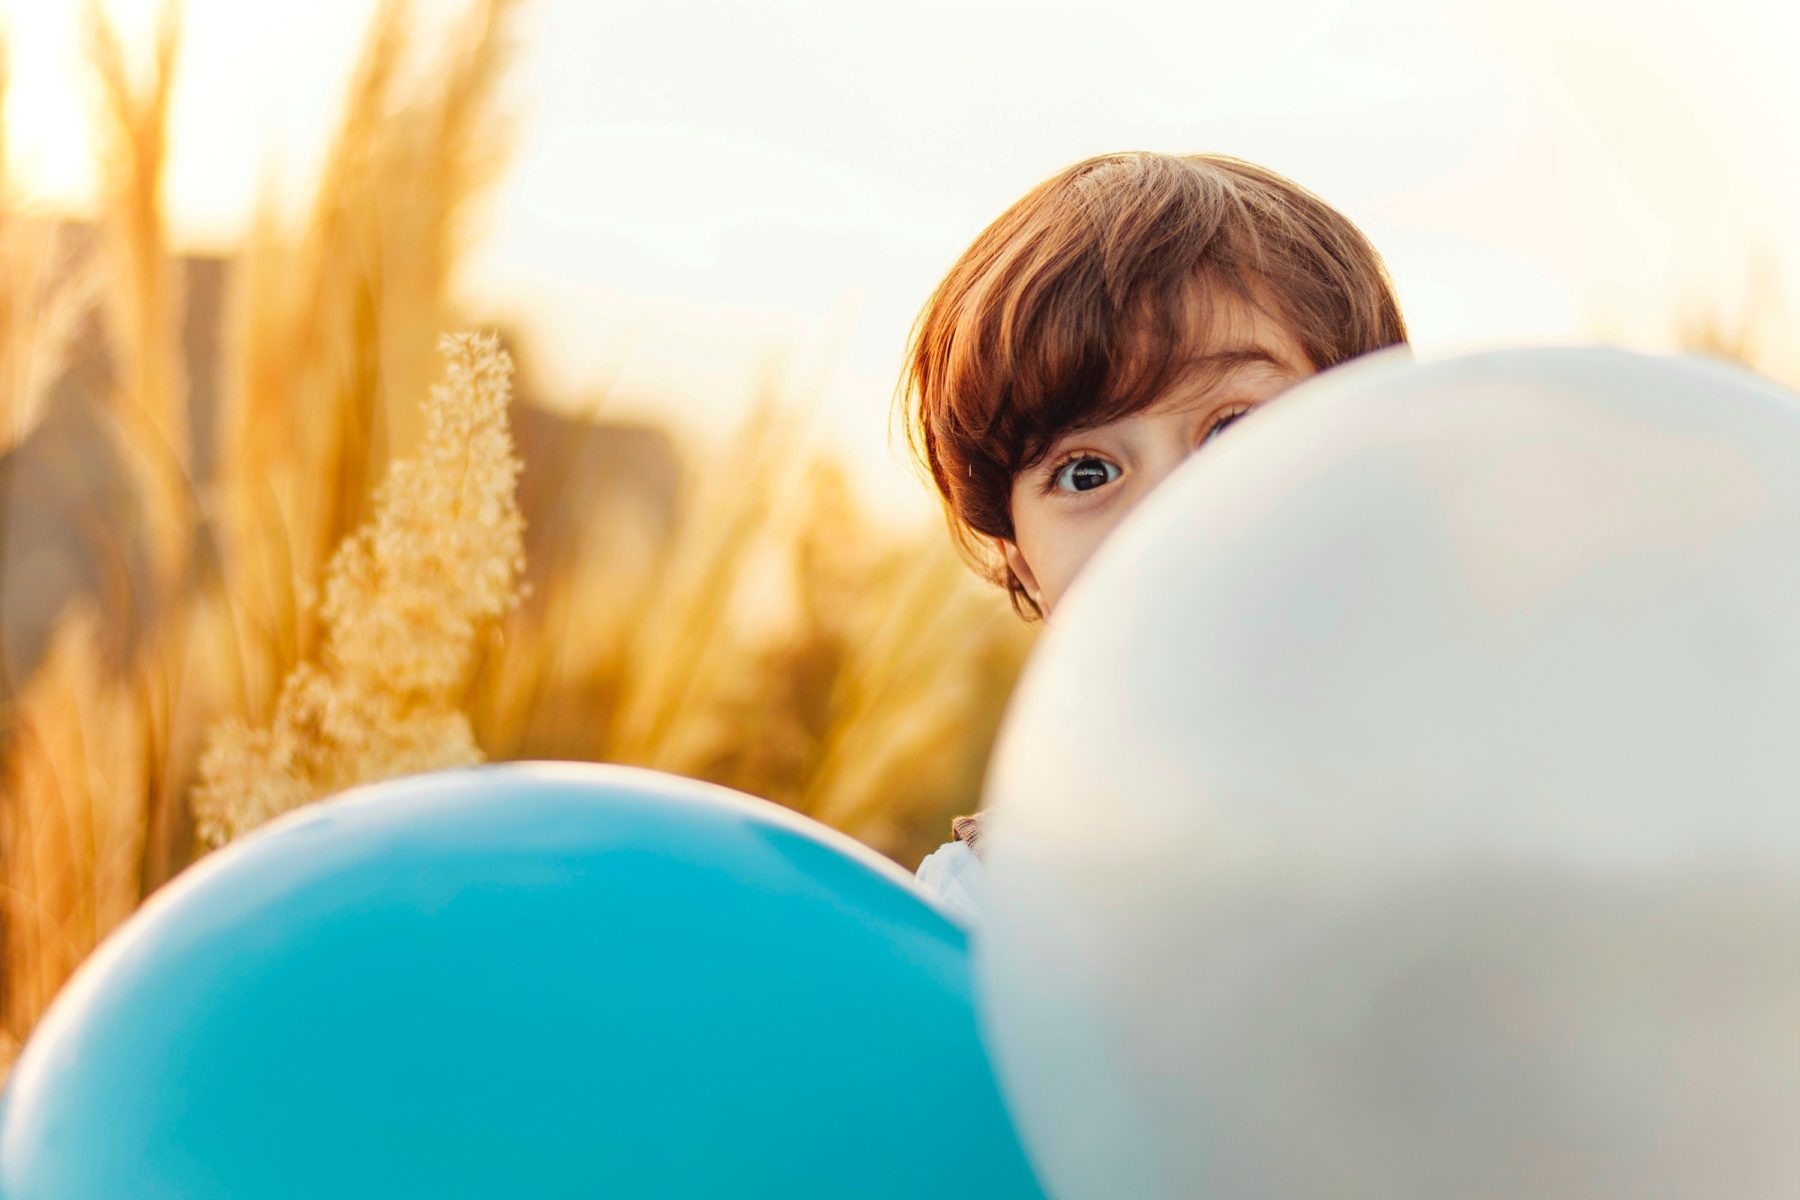 A young boy hiding behind a blue and silver balloon.